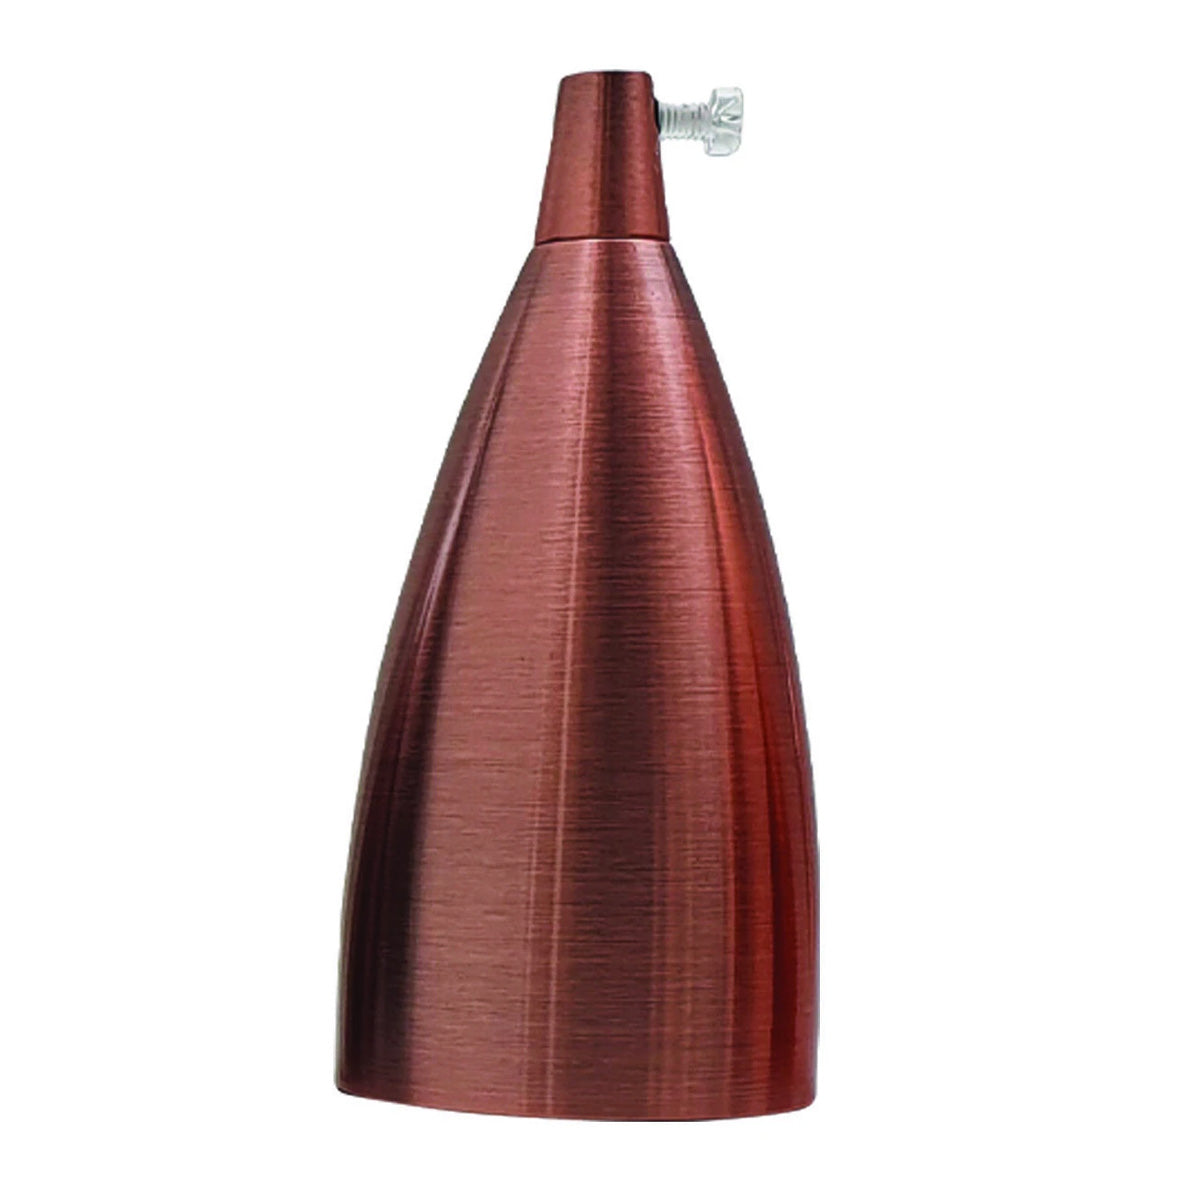 LEDSone industrial vintage Copper E27 Lamp Light Bulb Holder~2684 - LEDSone UK Ltd